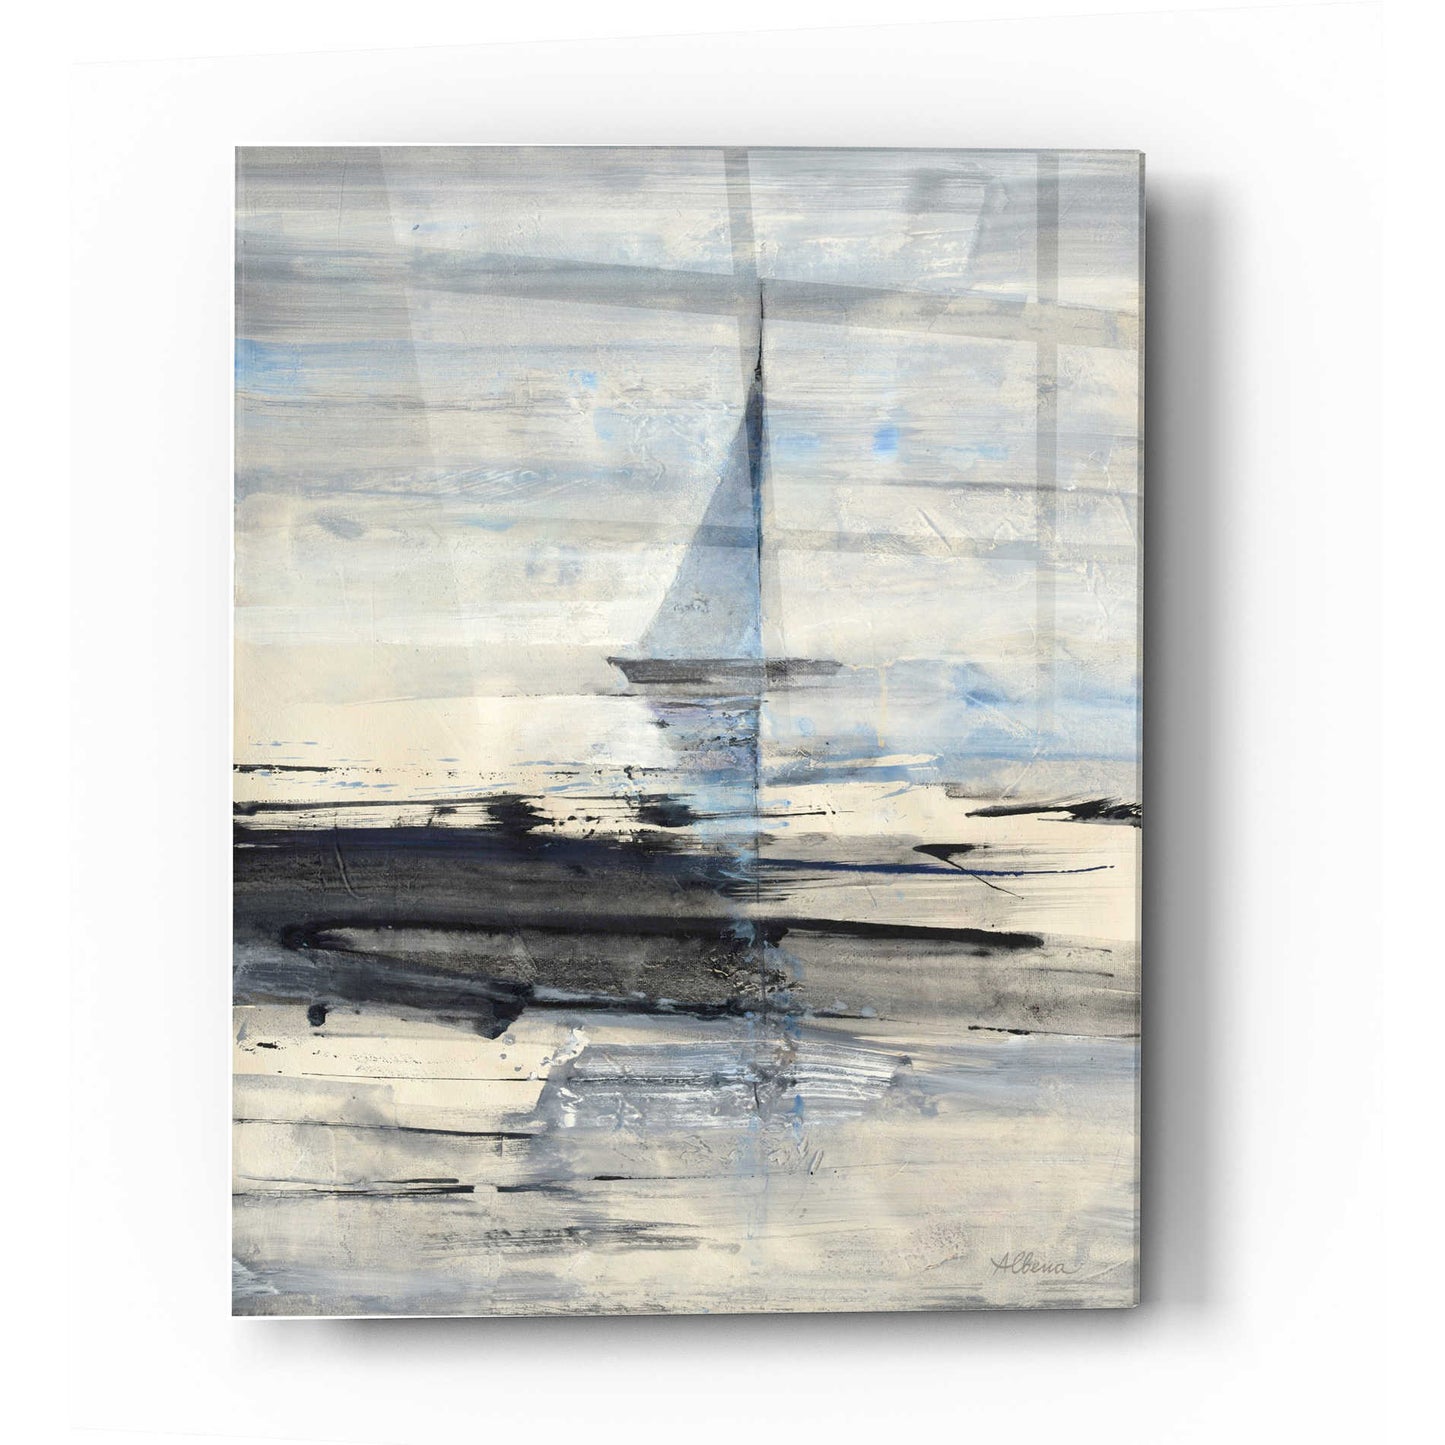 Epic Art 'Sailing' by Albena Hristova, Acrylic Glass Wall Art,16x24